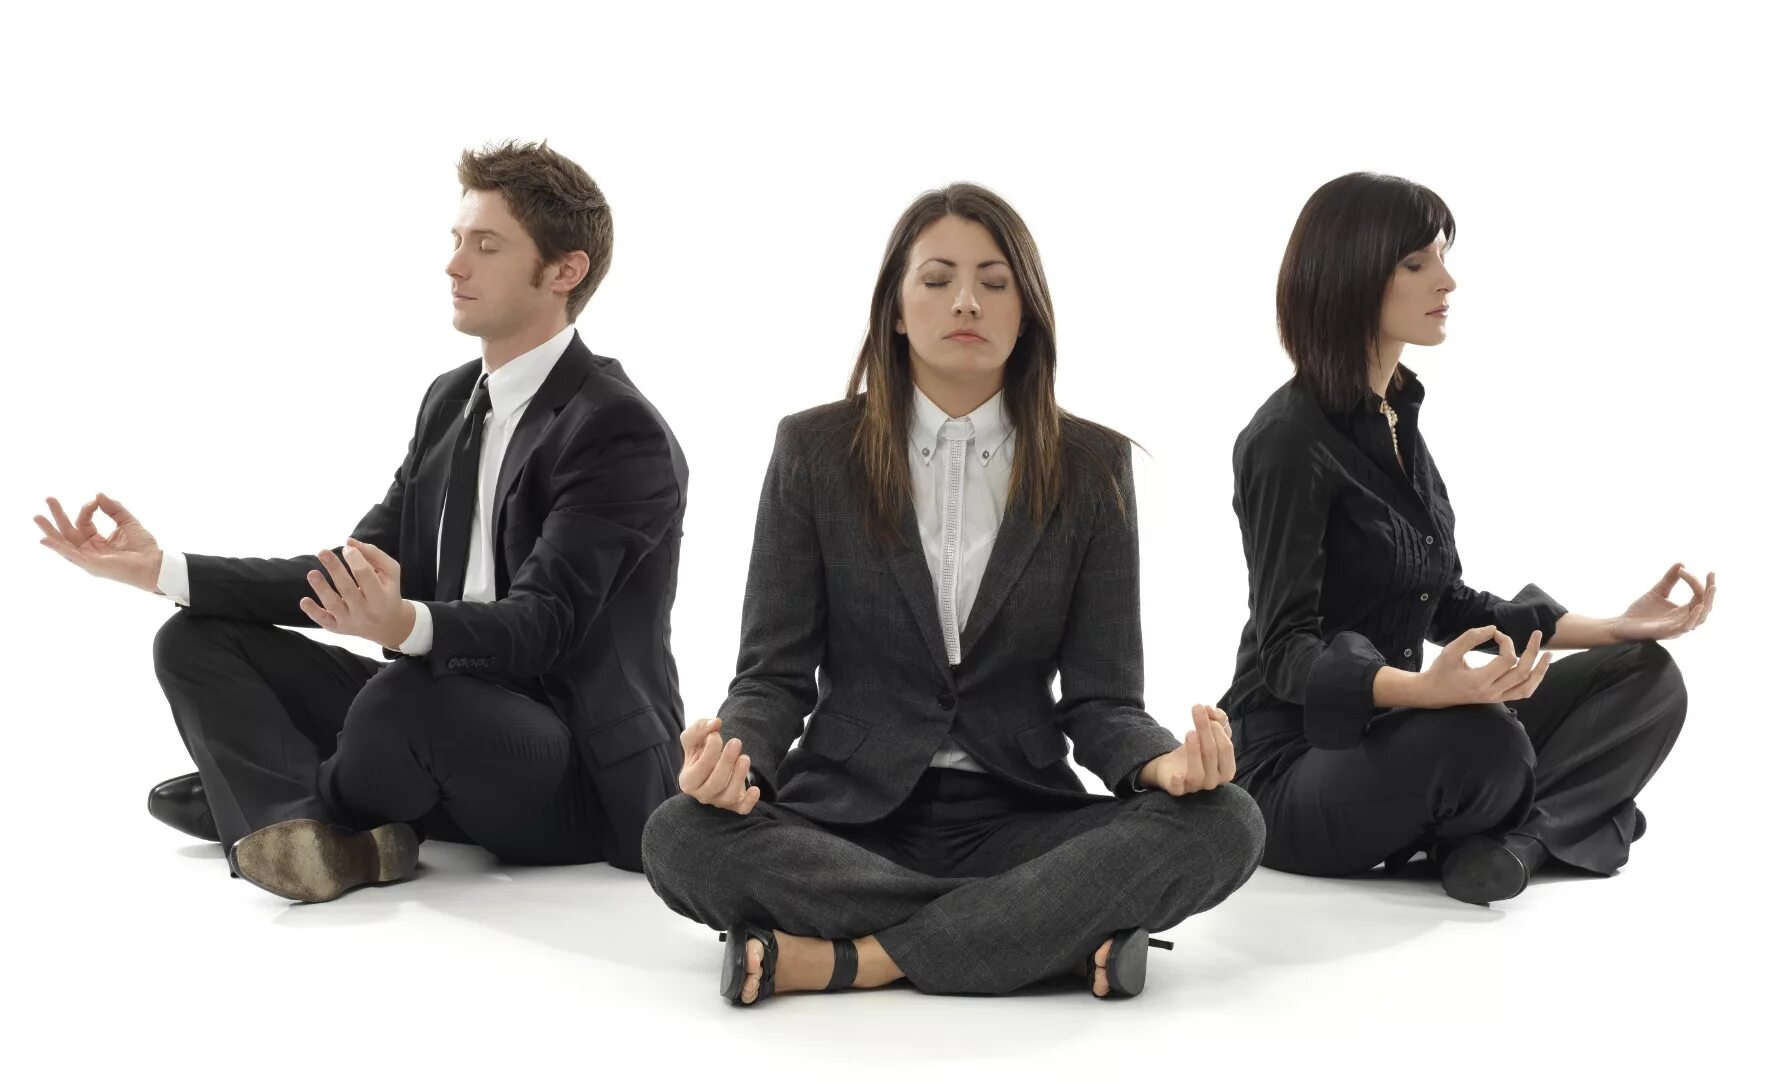 Медитация в офисе. Корпоративная йога. Медитация корпоративная в офисе. Групповая медитация в офисе. Ритуалы общения